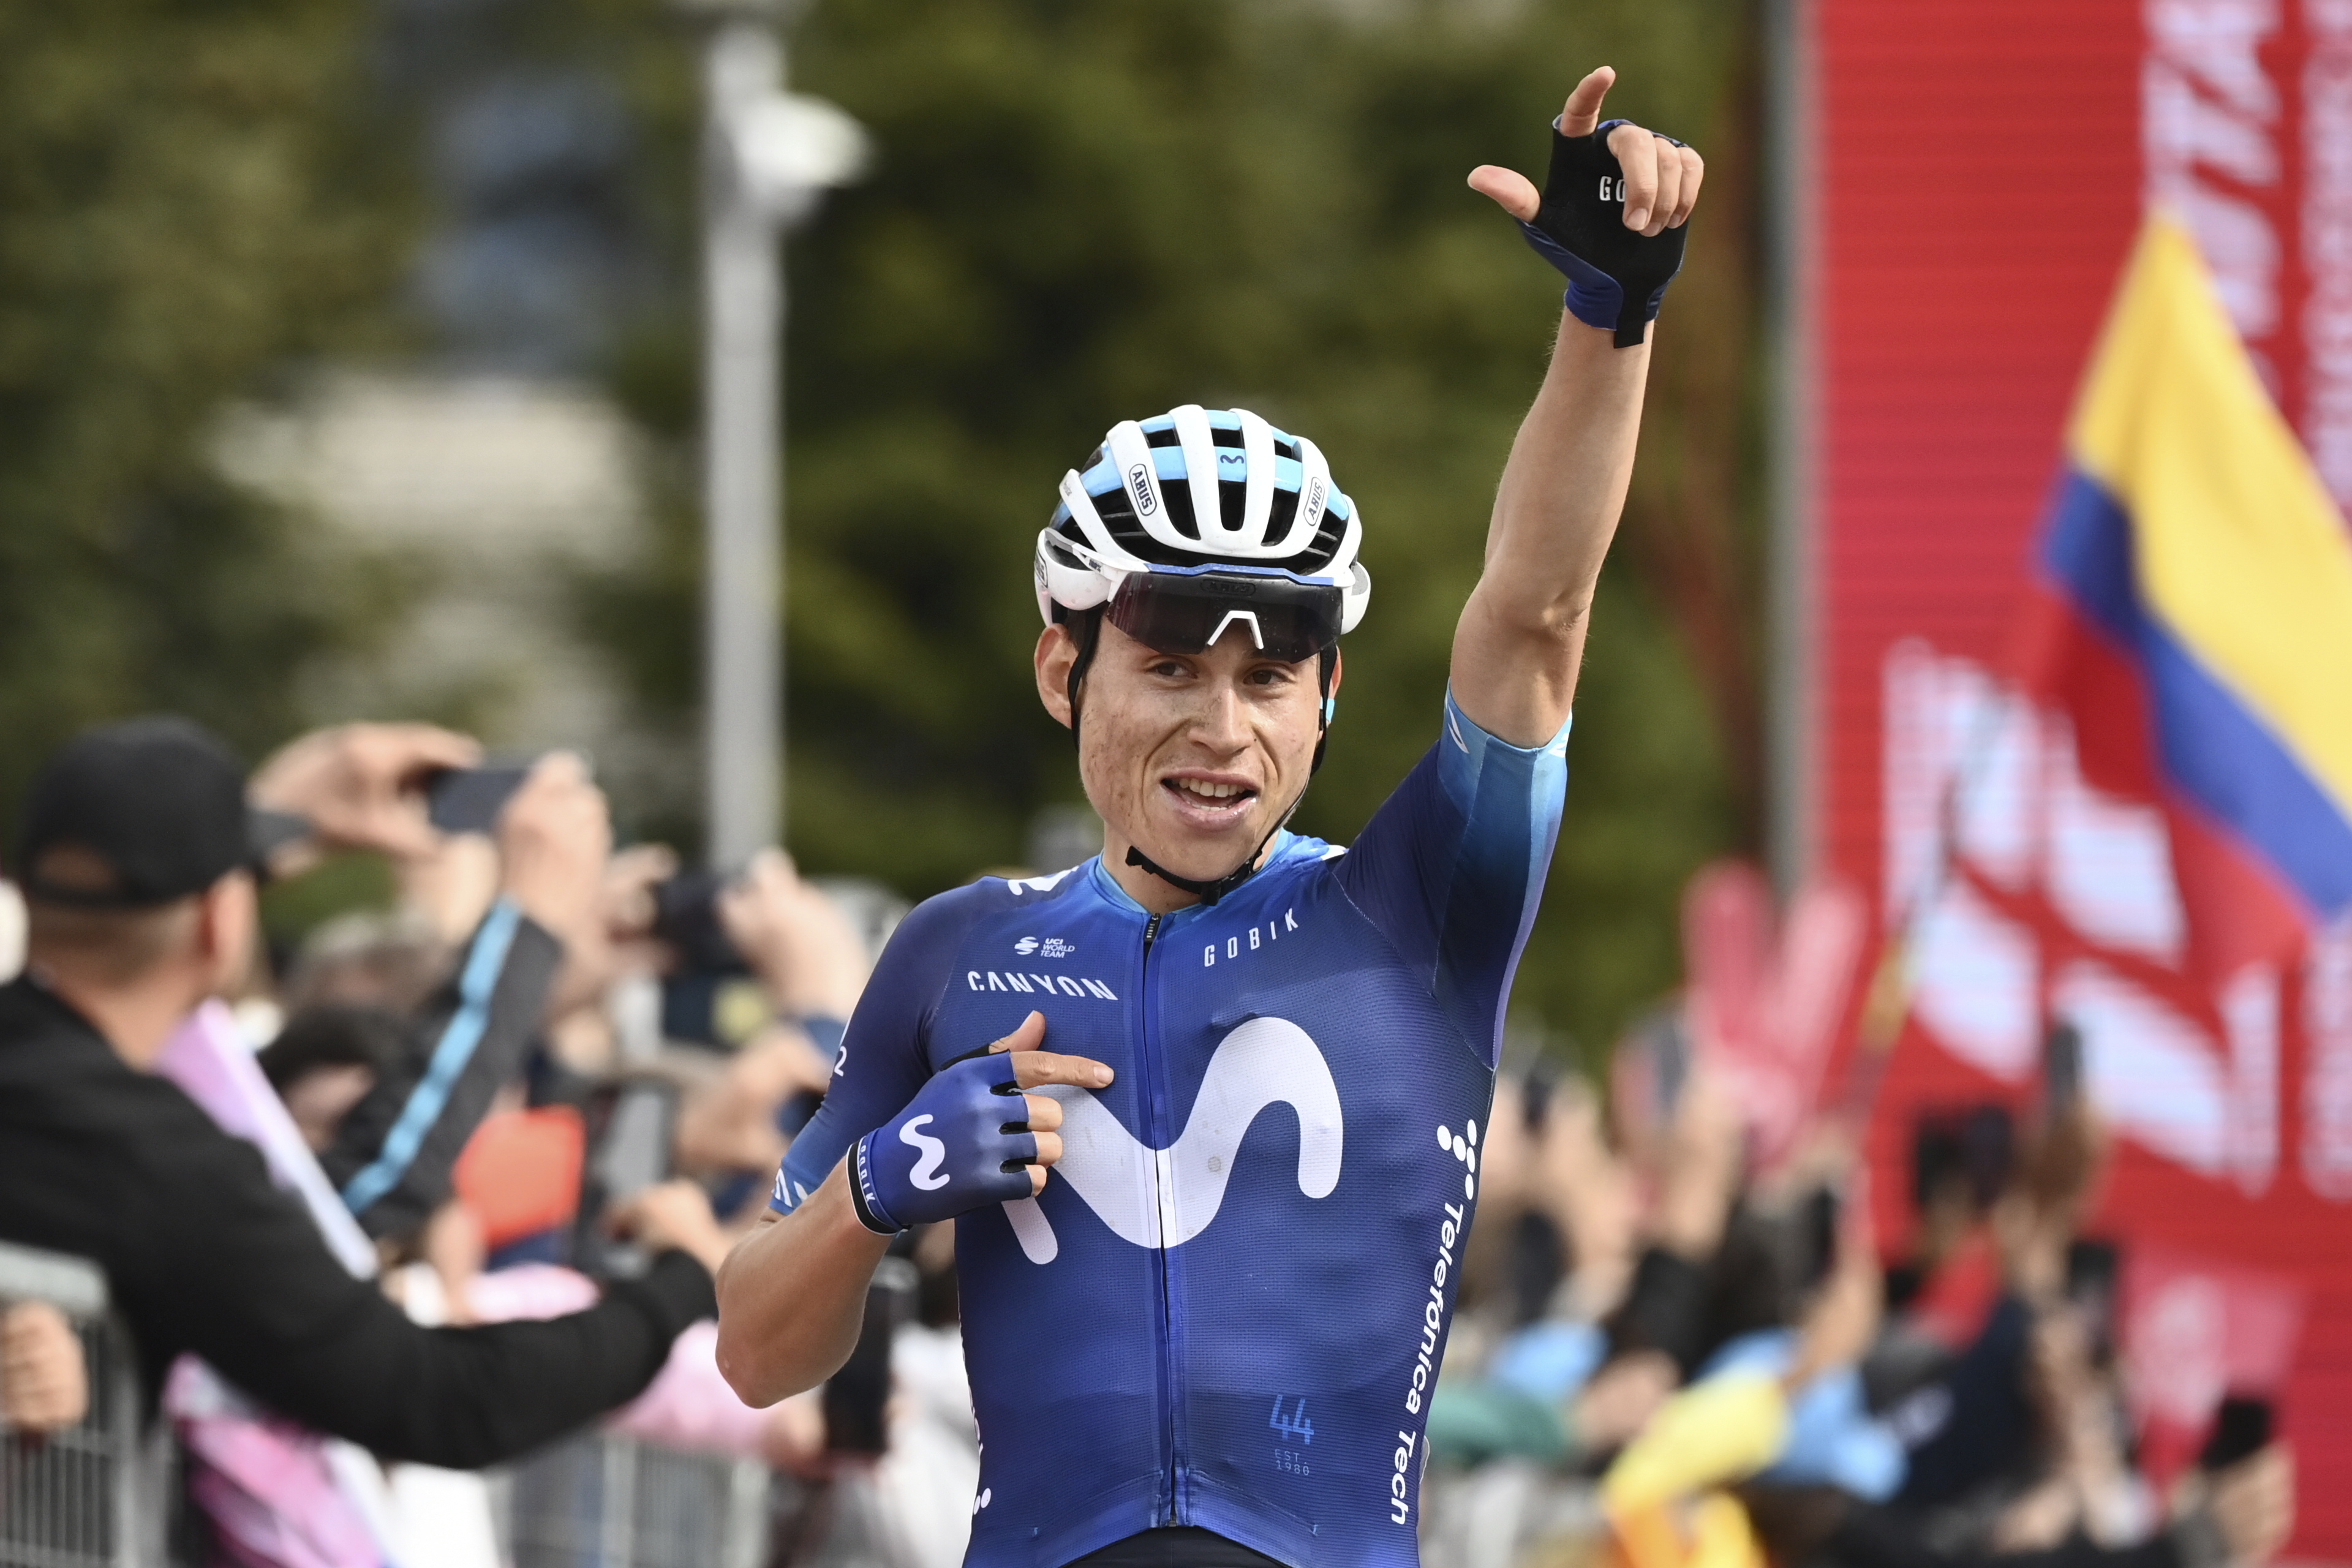 Cuánto dinero ganaron Santiago Buitrago y Einer Rubio en el Giro de Italia